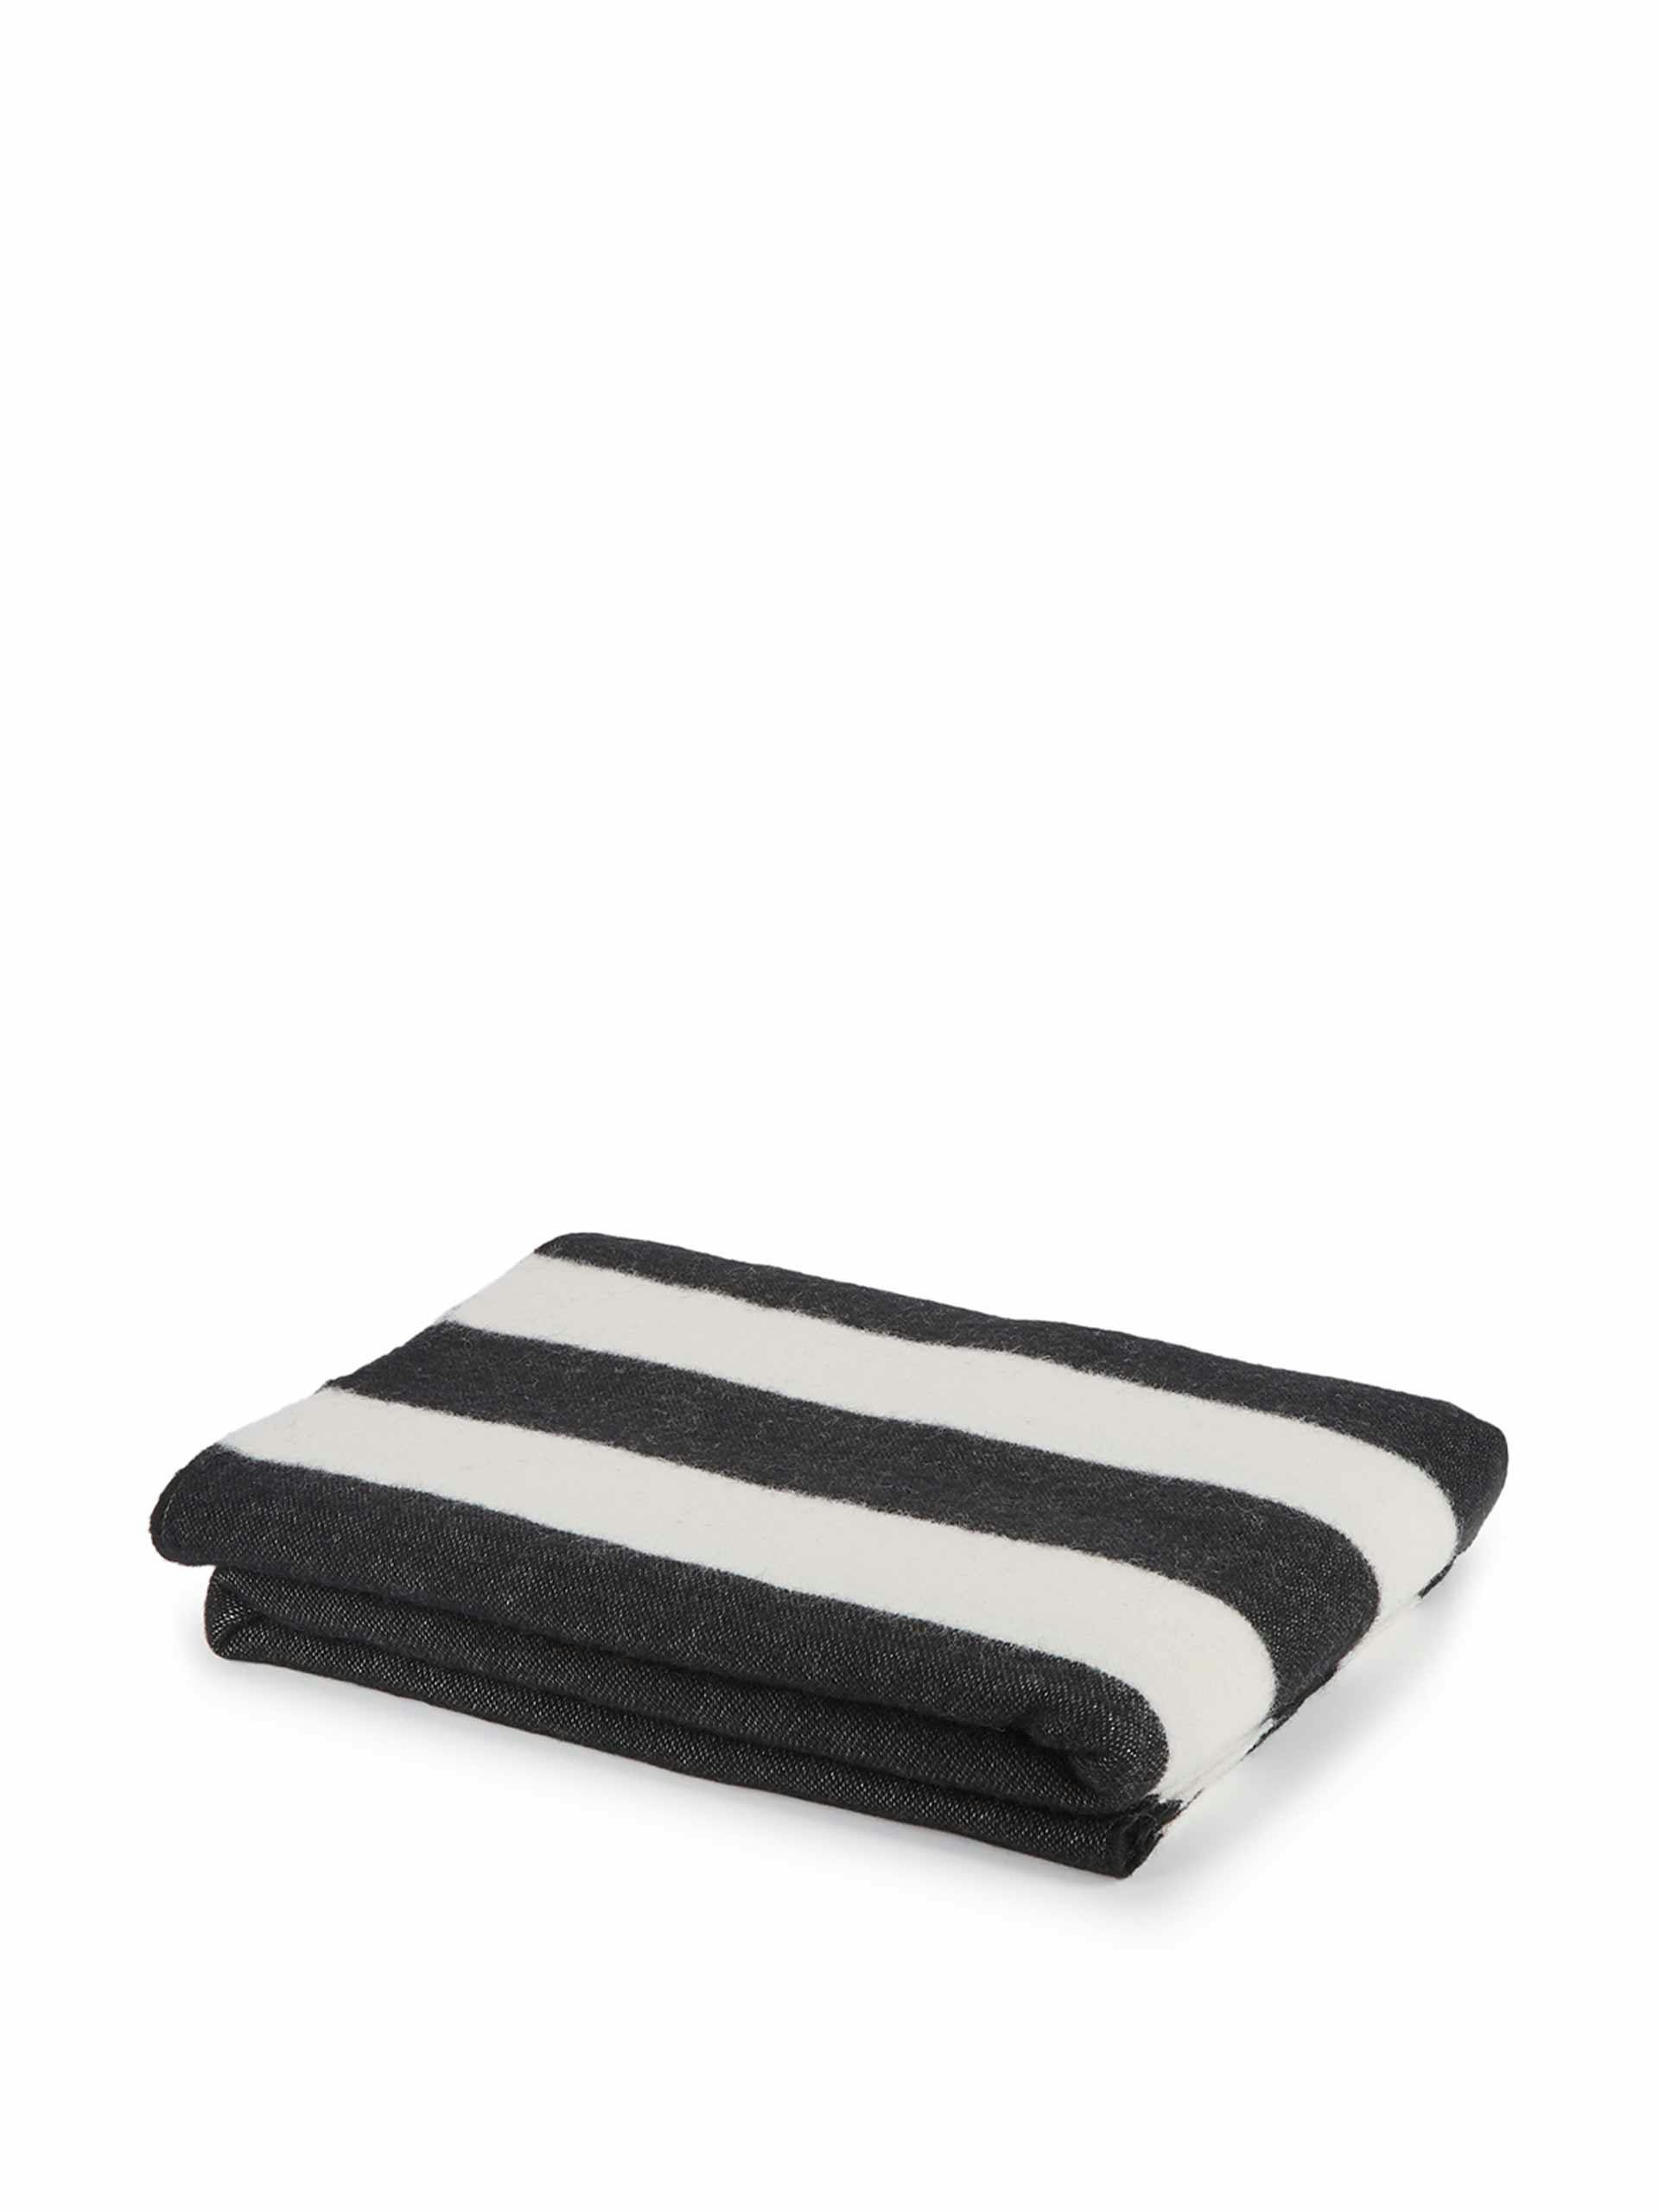 Monochrome striped wool blanket